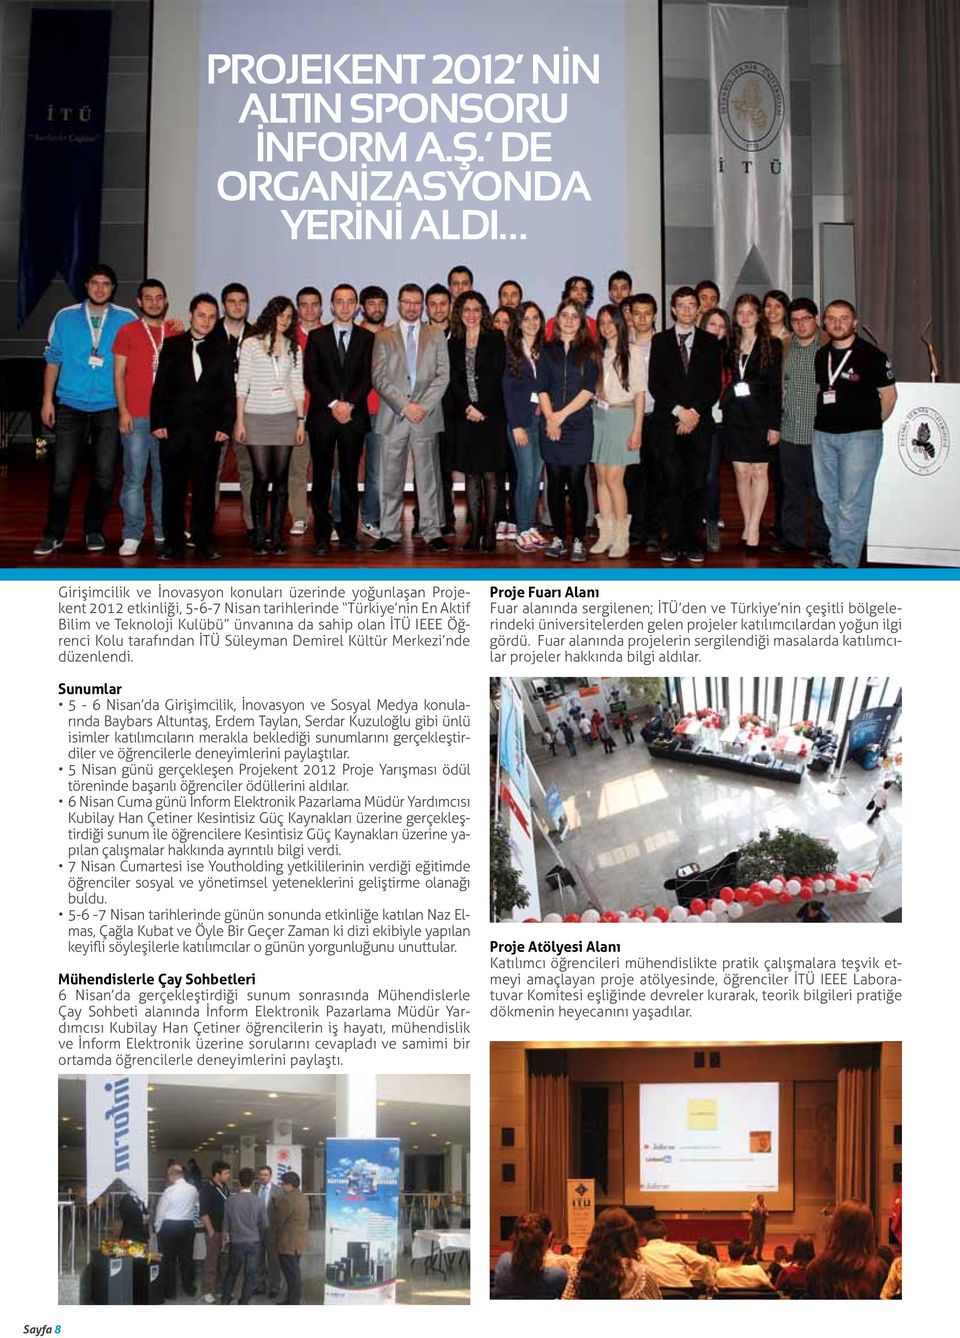 sahip olan İTÜ IEEE Öğrenci Kolu tarafından İTÜ Süleyman Demirel Kültür Merkezi nde düzenlendi.